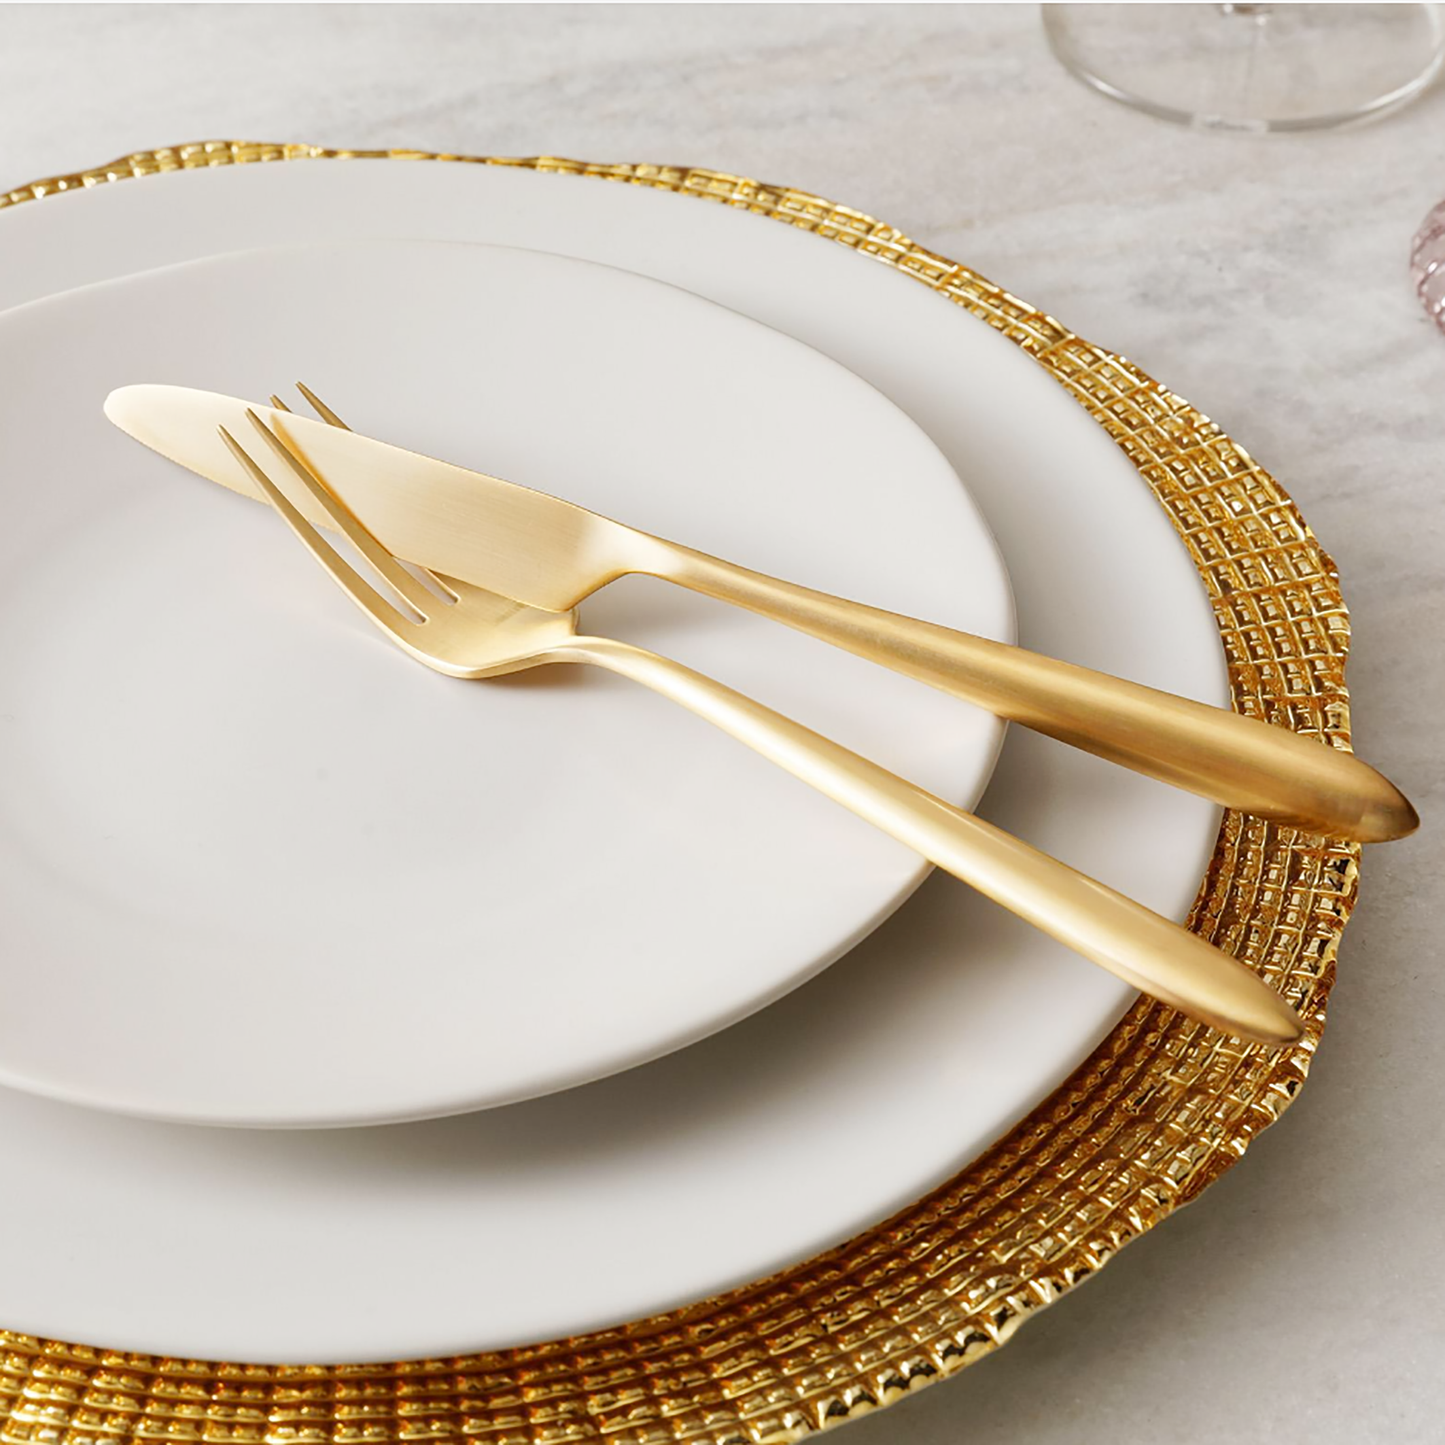 Epic Brushed Full Gold 4-Pcs Cutlery Set